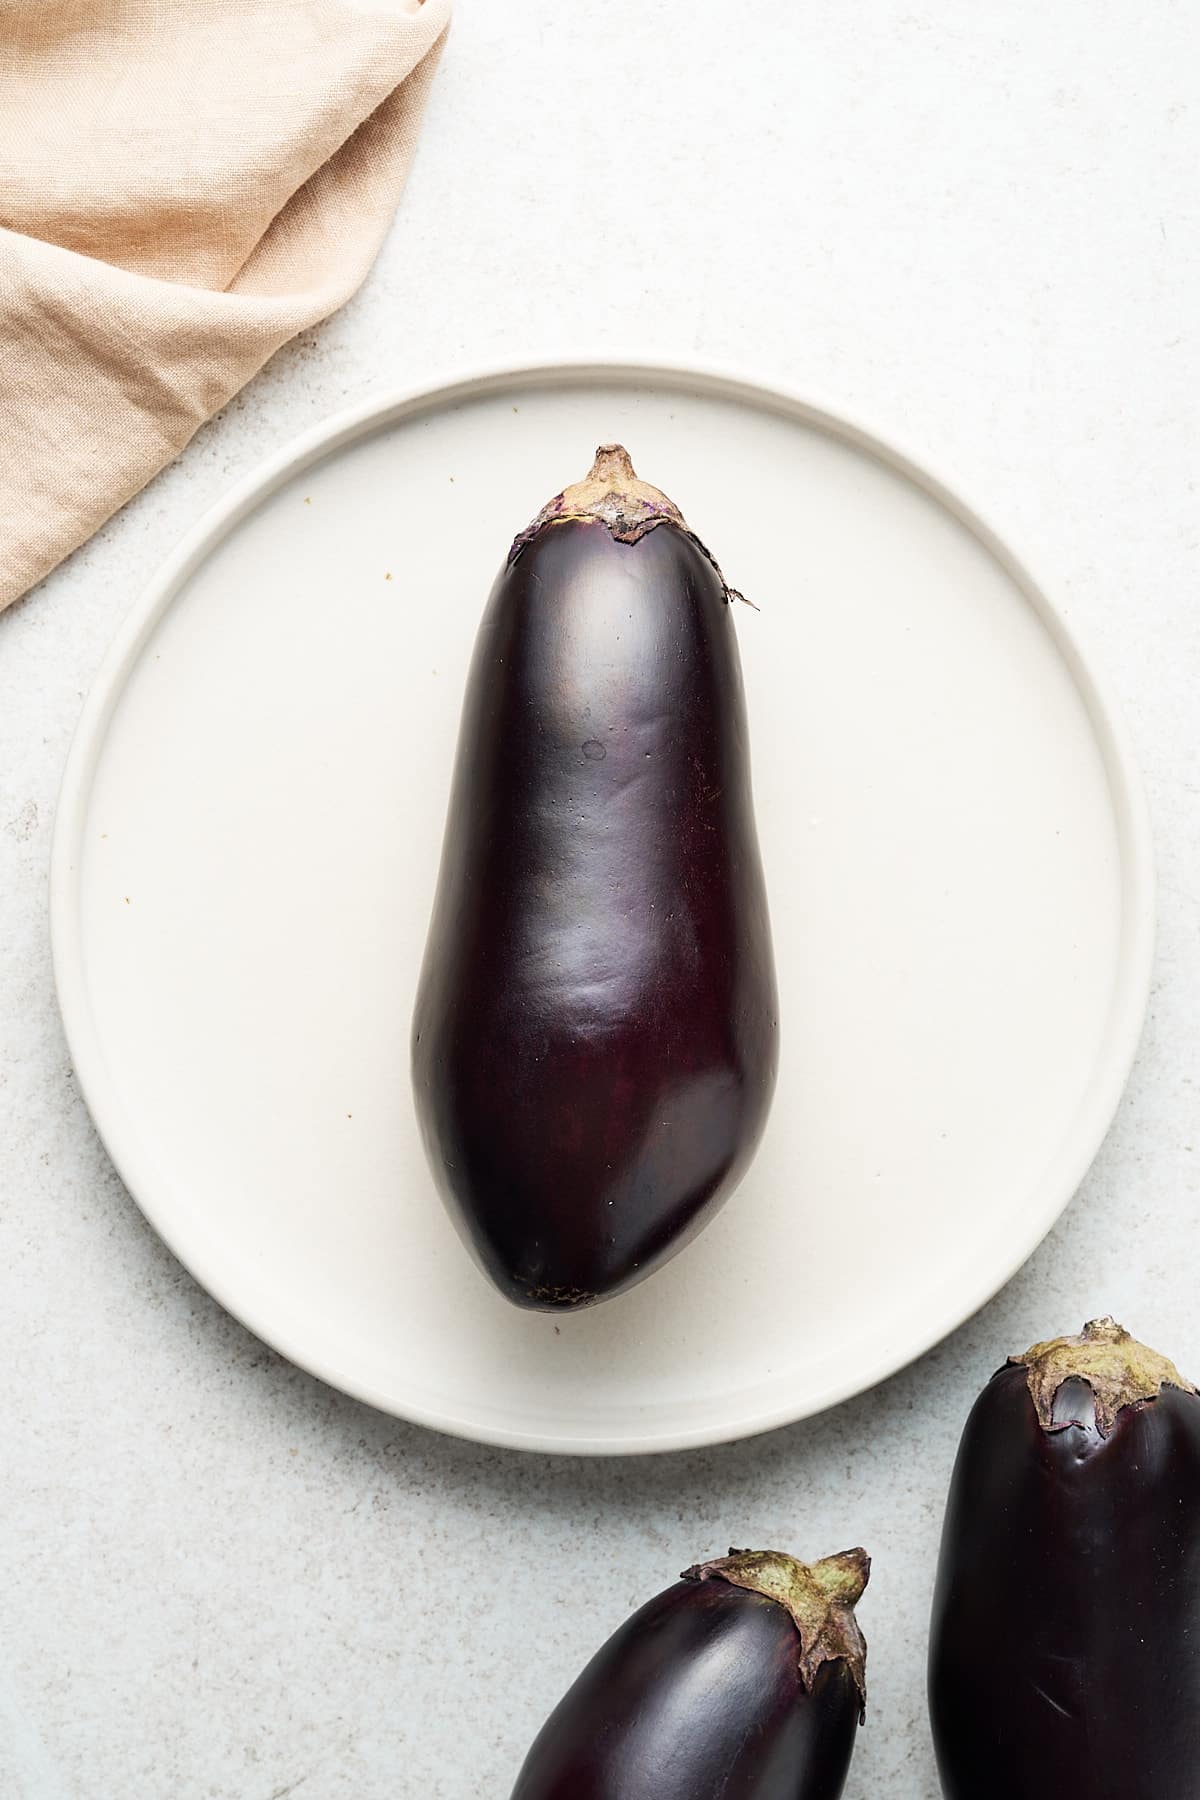 Eggplant on a plate.